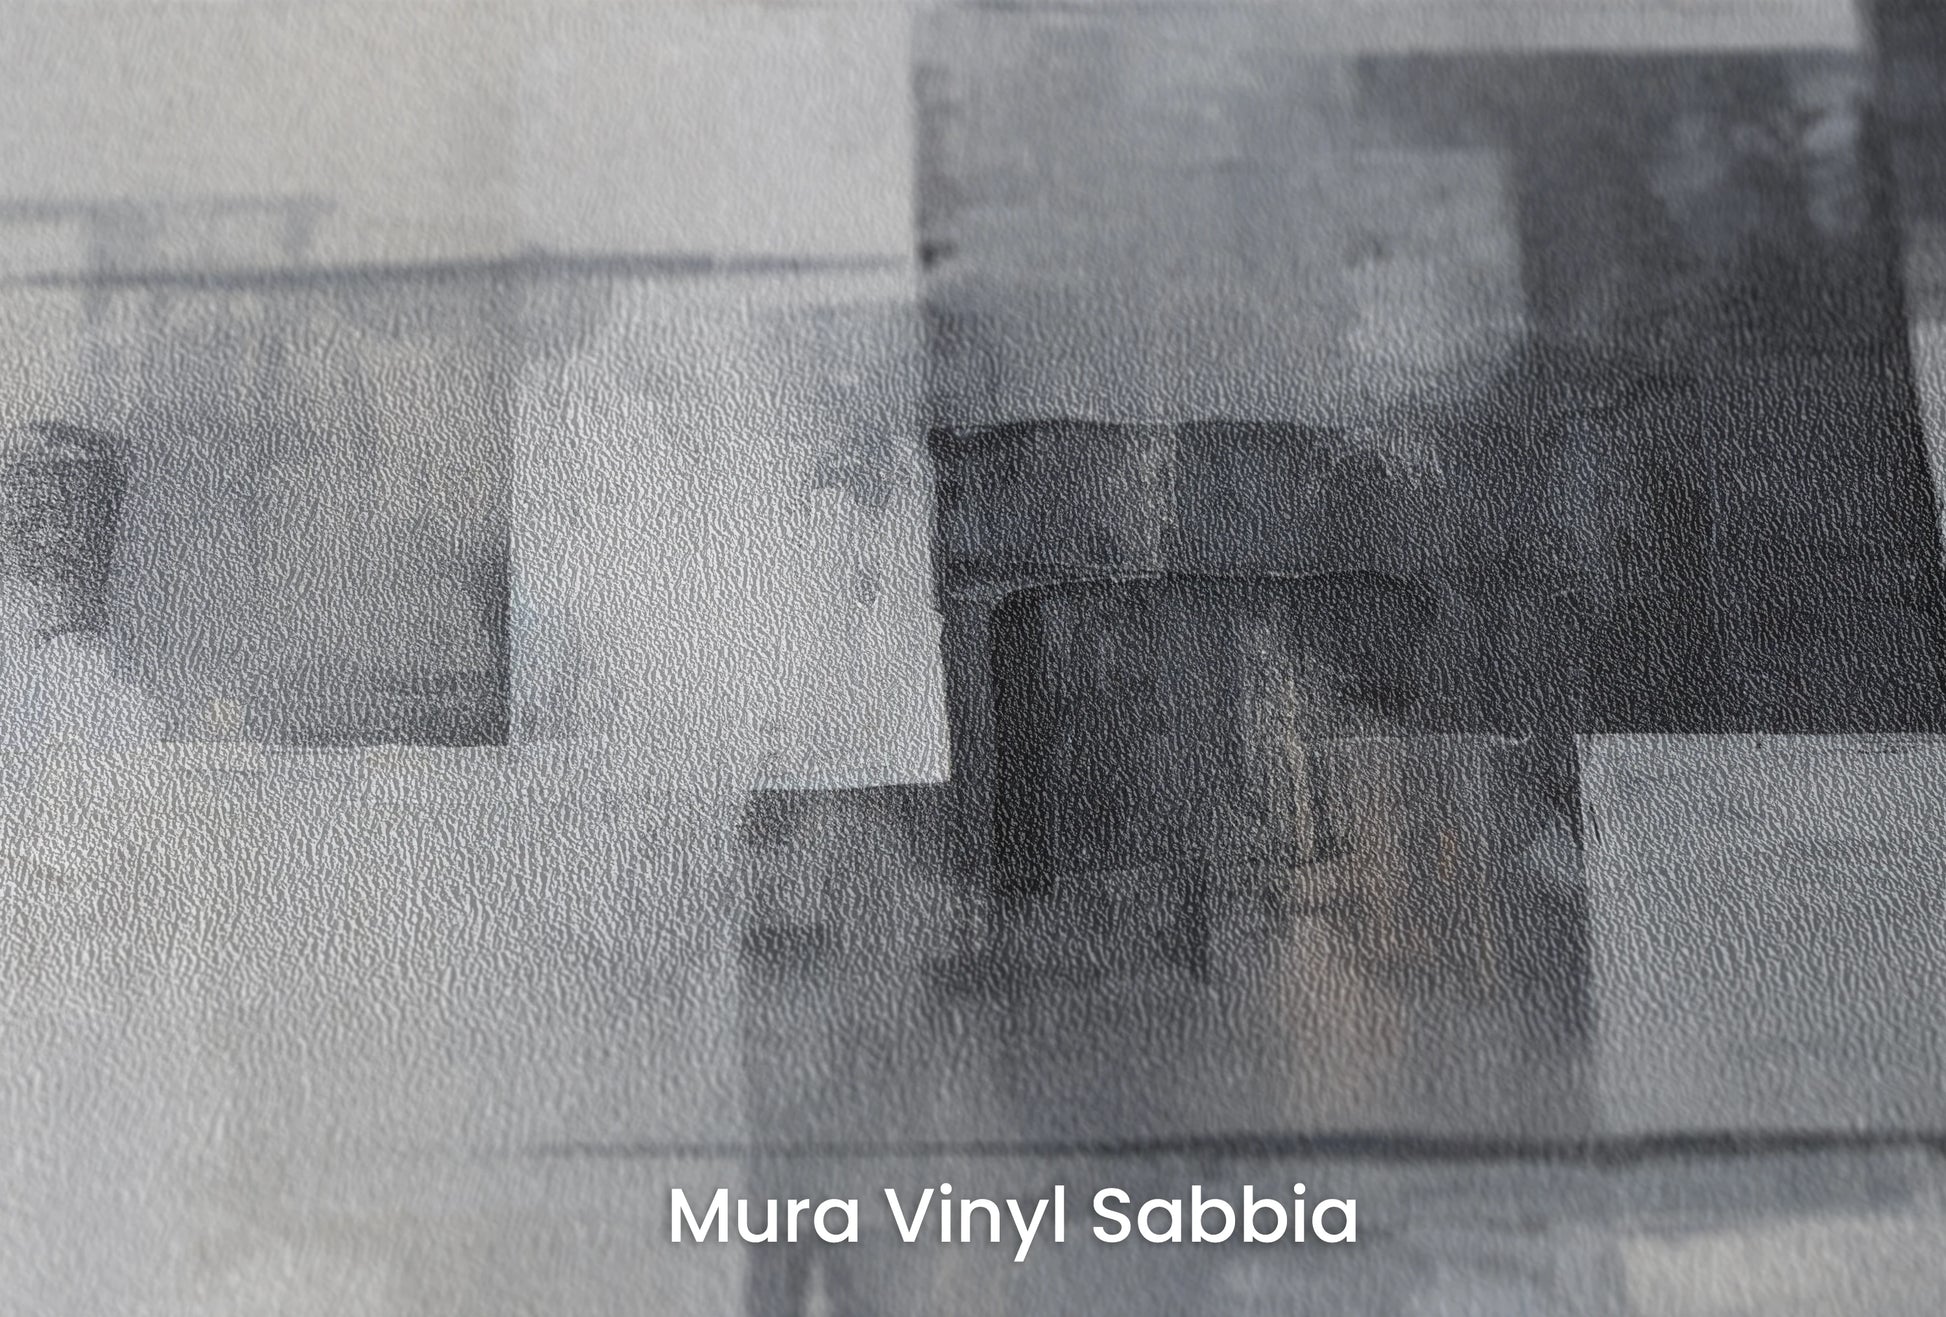 Zbliżenie na artystyczną fototapetę o nazwie Shades and Tones na podłożu Mura Vinyl Sabbia struktura grubego ziarna piasku.